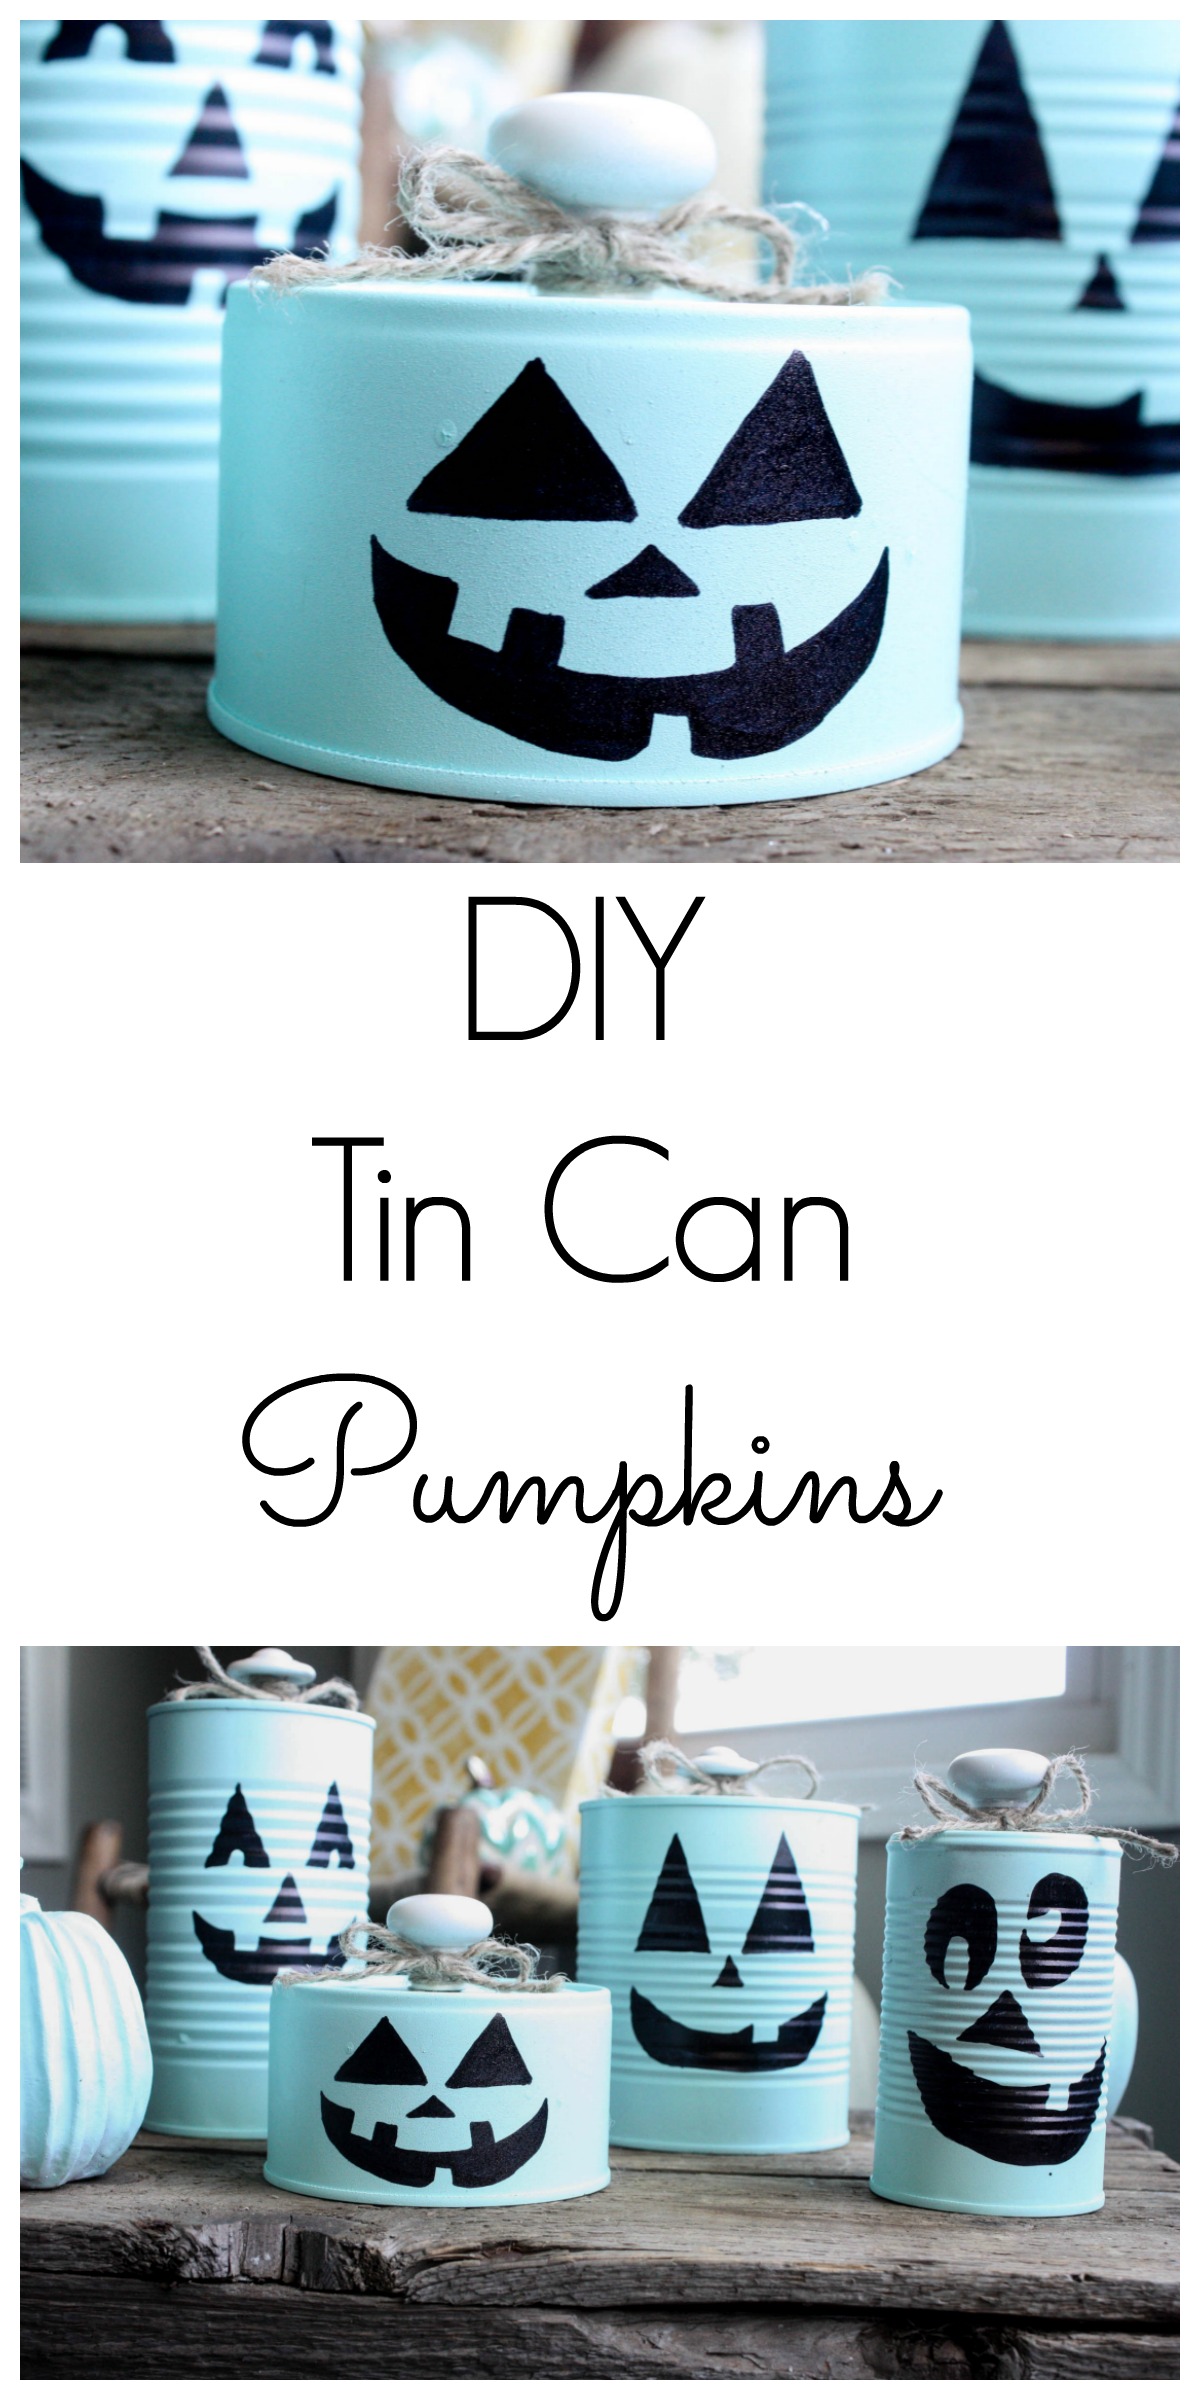 DIY Tin Can Pumpkins - Re-Fabbed